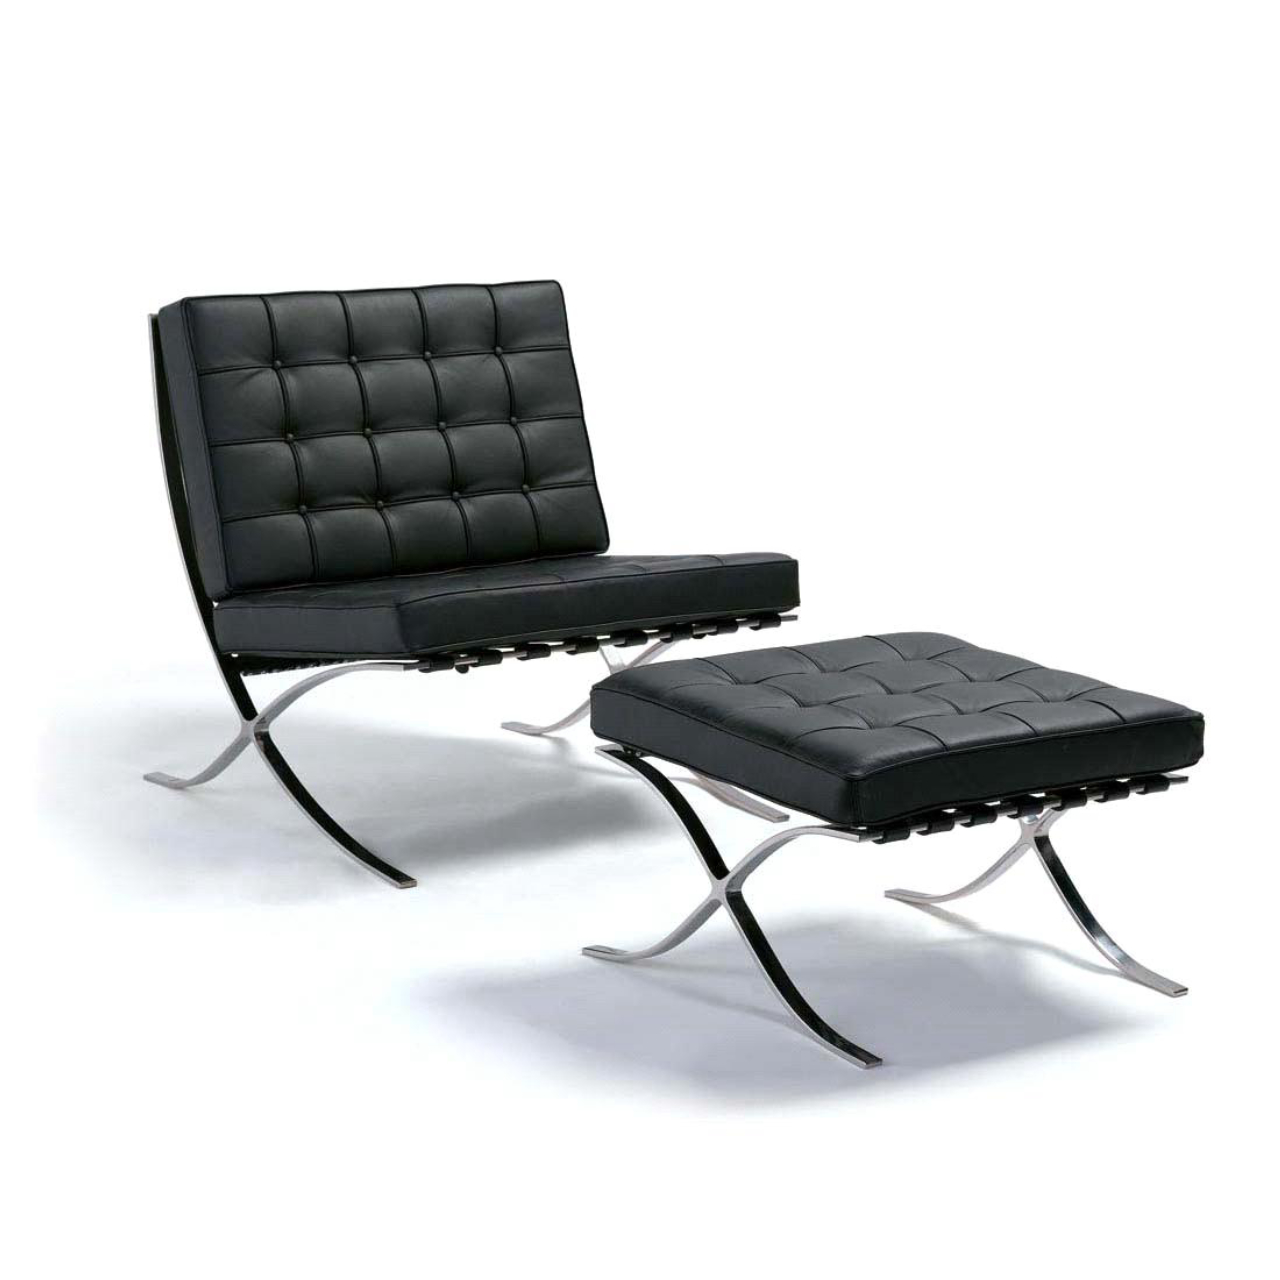 Barcelona - Ícone do movimento moderno, a cadeira Barcelona foi desenhada por Mies Van der Rohe e Lilly Reich em 1929. Até hoje é uma das cadeiras mais respeitadas entre os designers de produto<br>